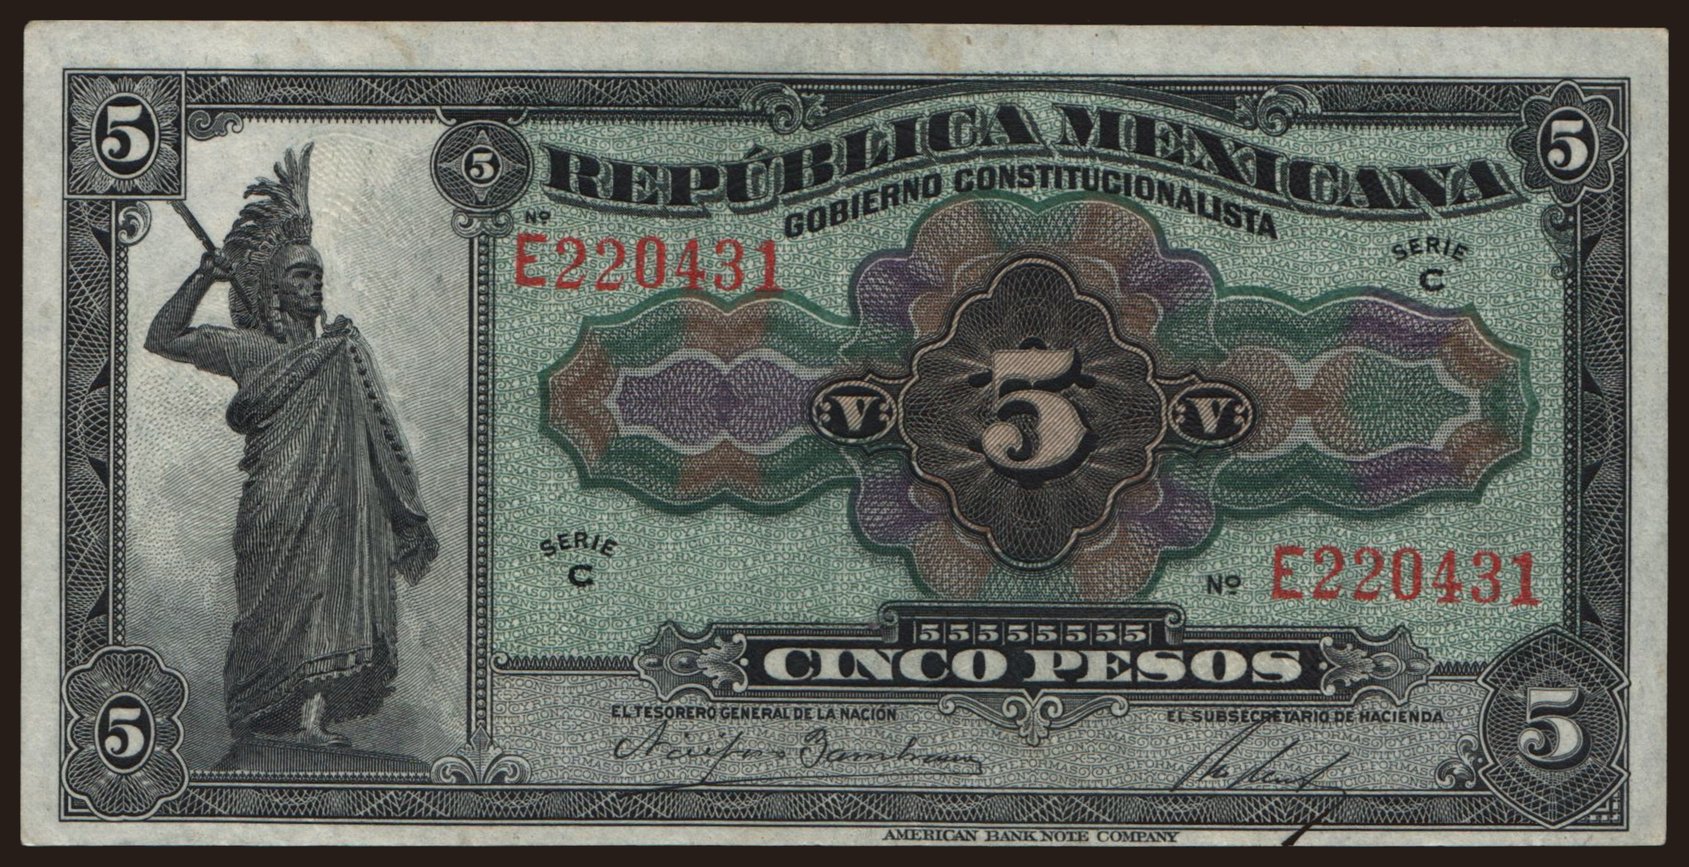 Gobierno Constitucionalista, Republica Mexicana, 5 pesos, 1915